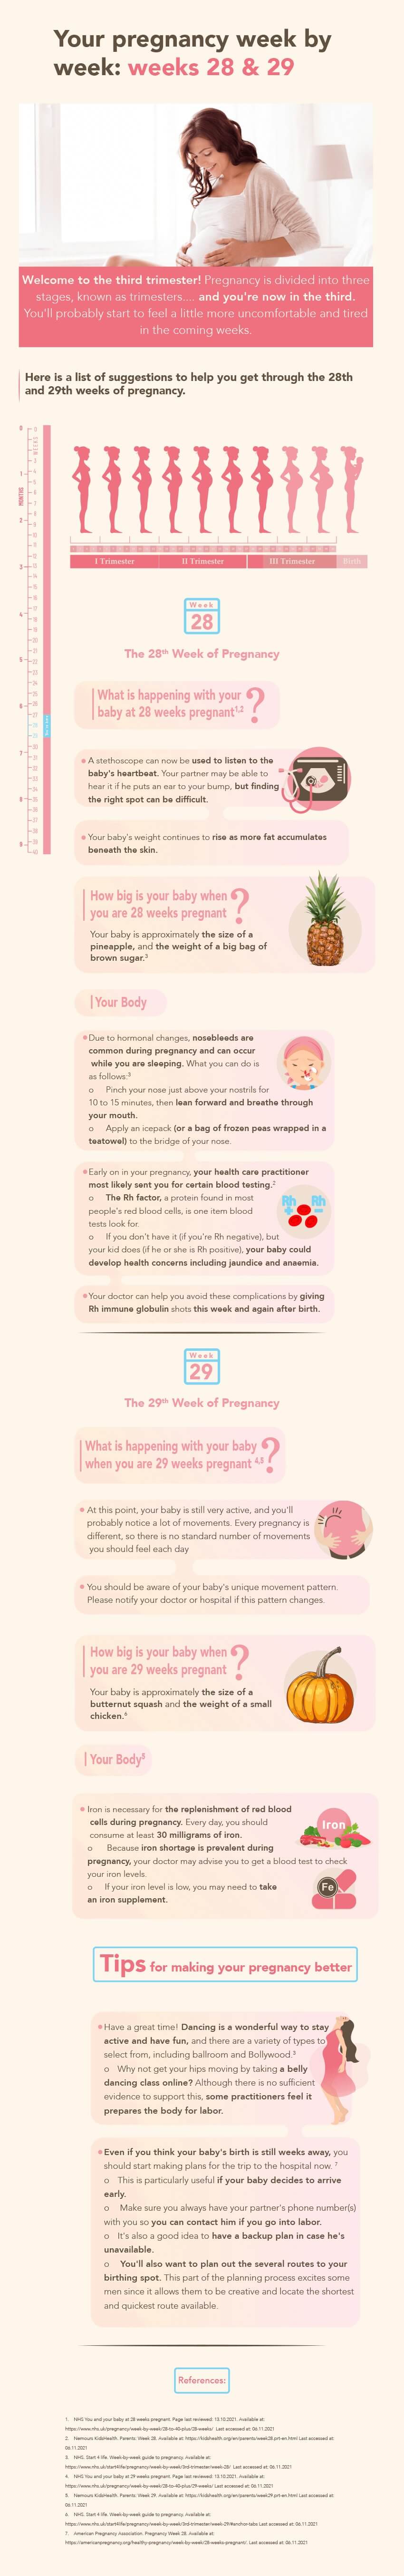 Pregnancy weeks 28&29